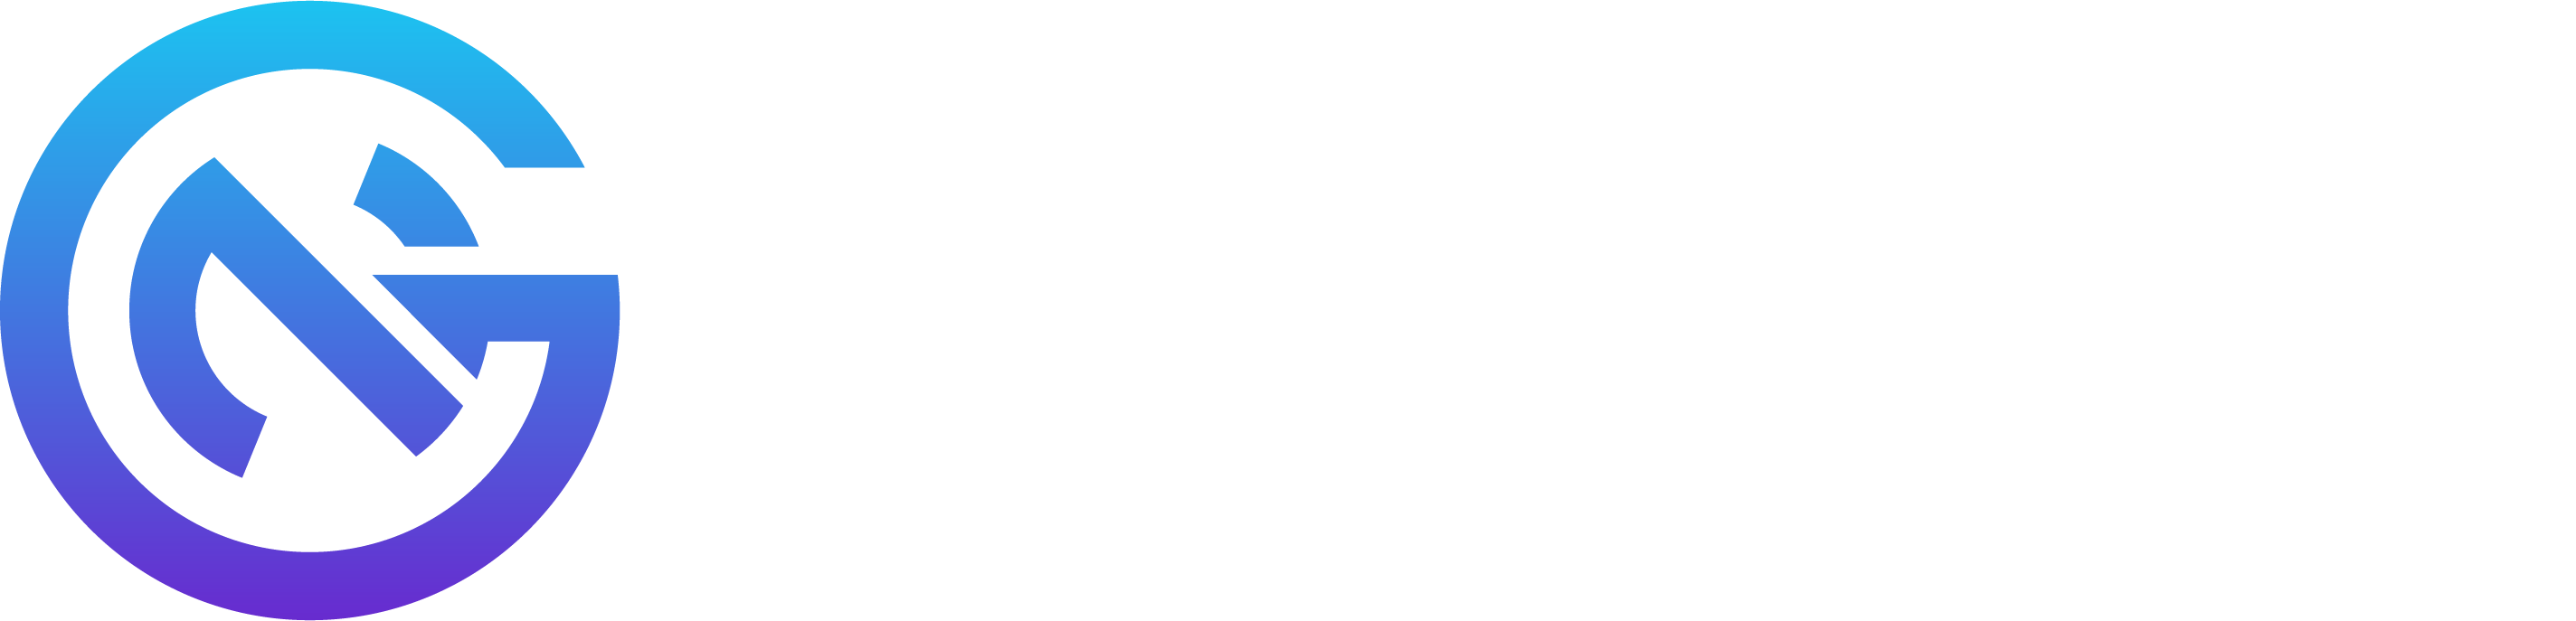 NexGen Cloud